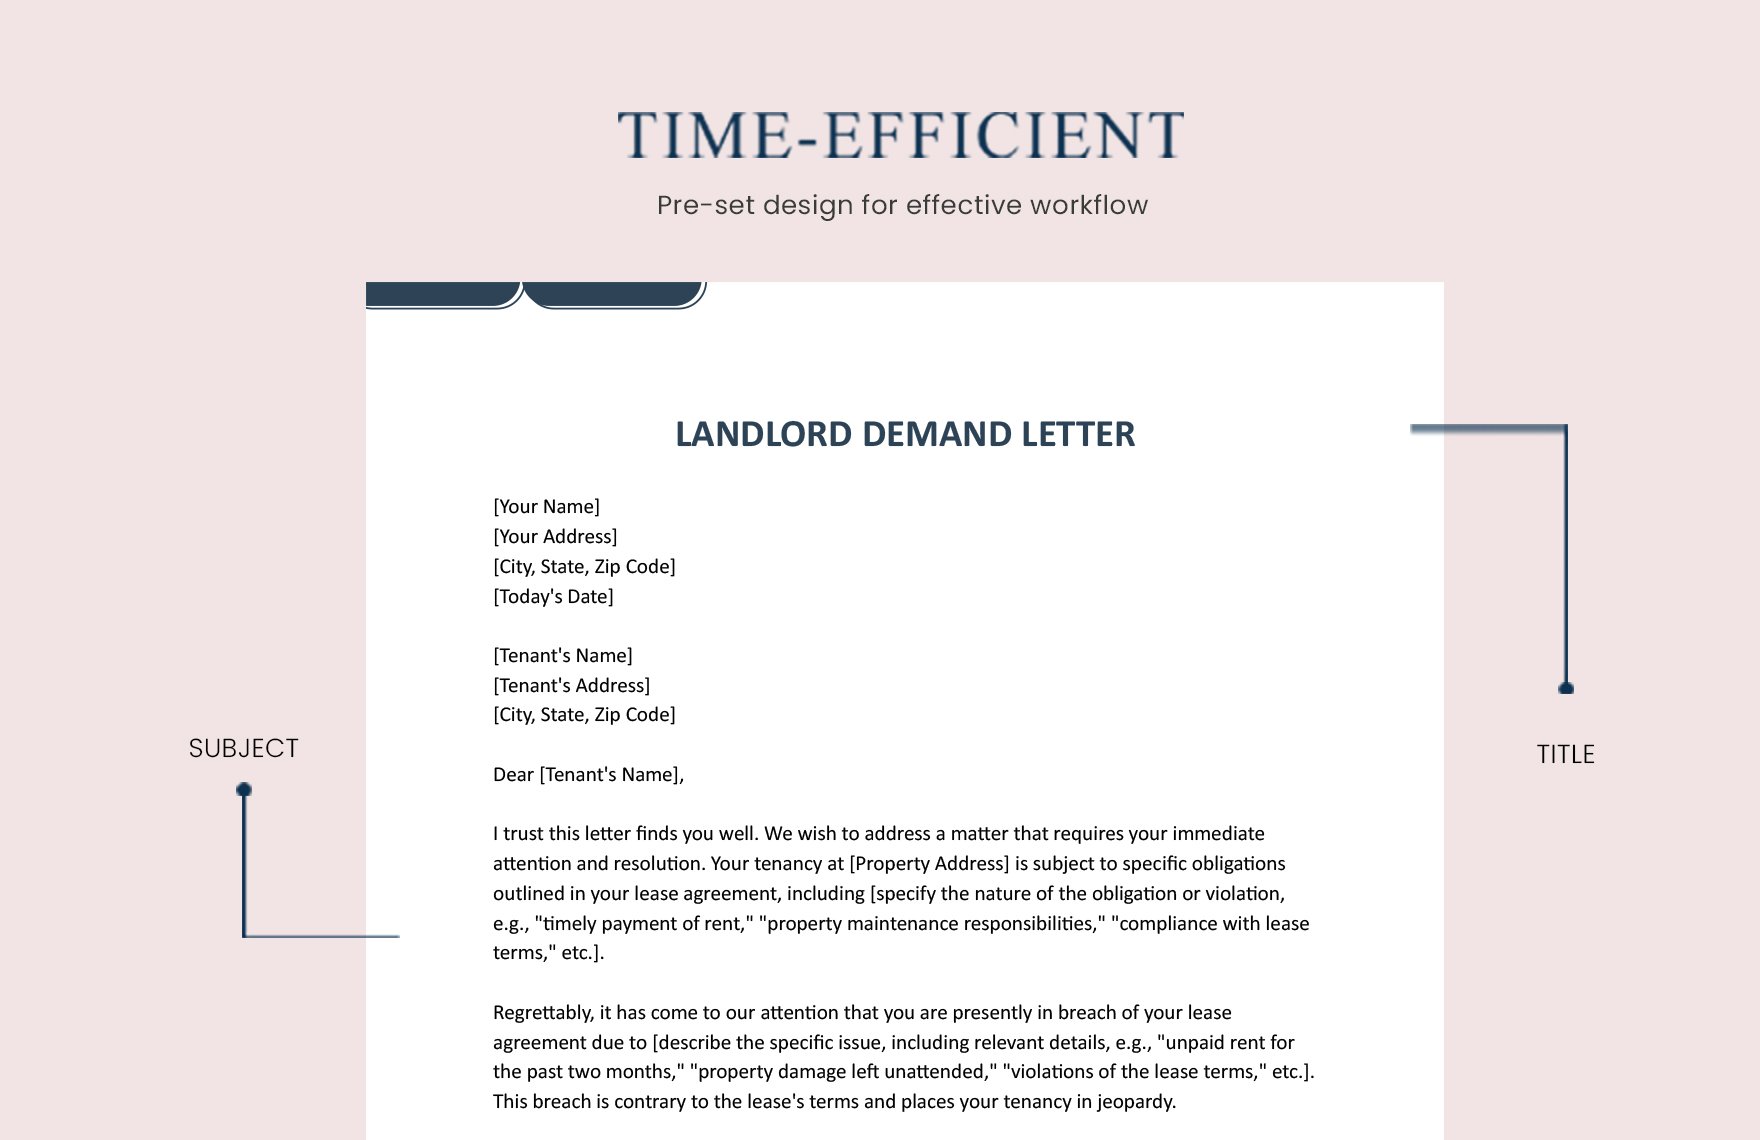 Landlord Demand Letter